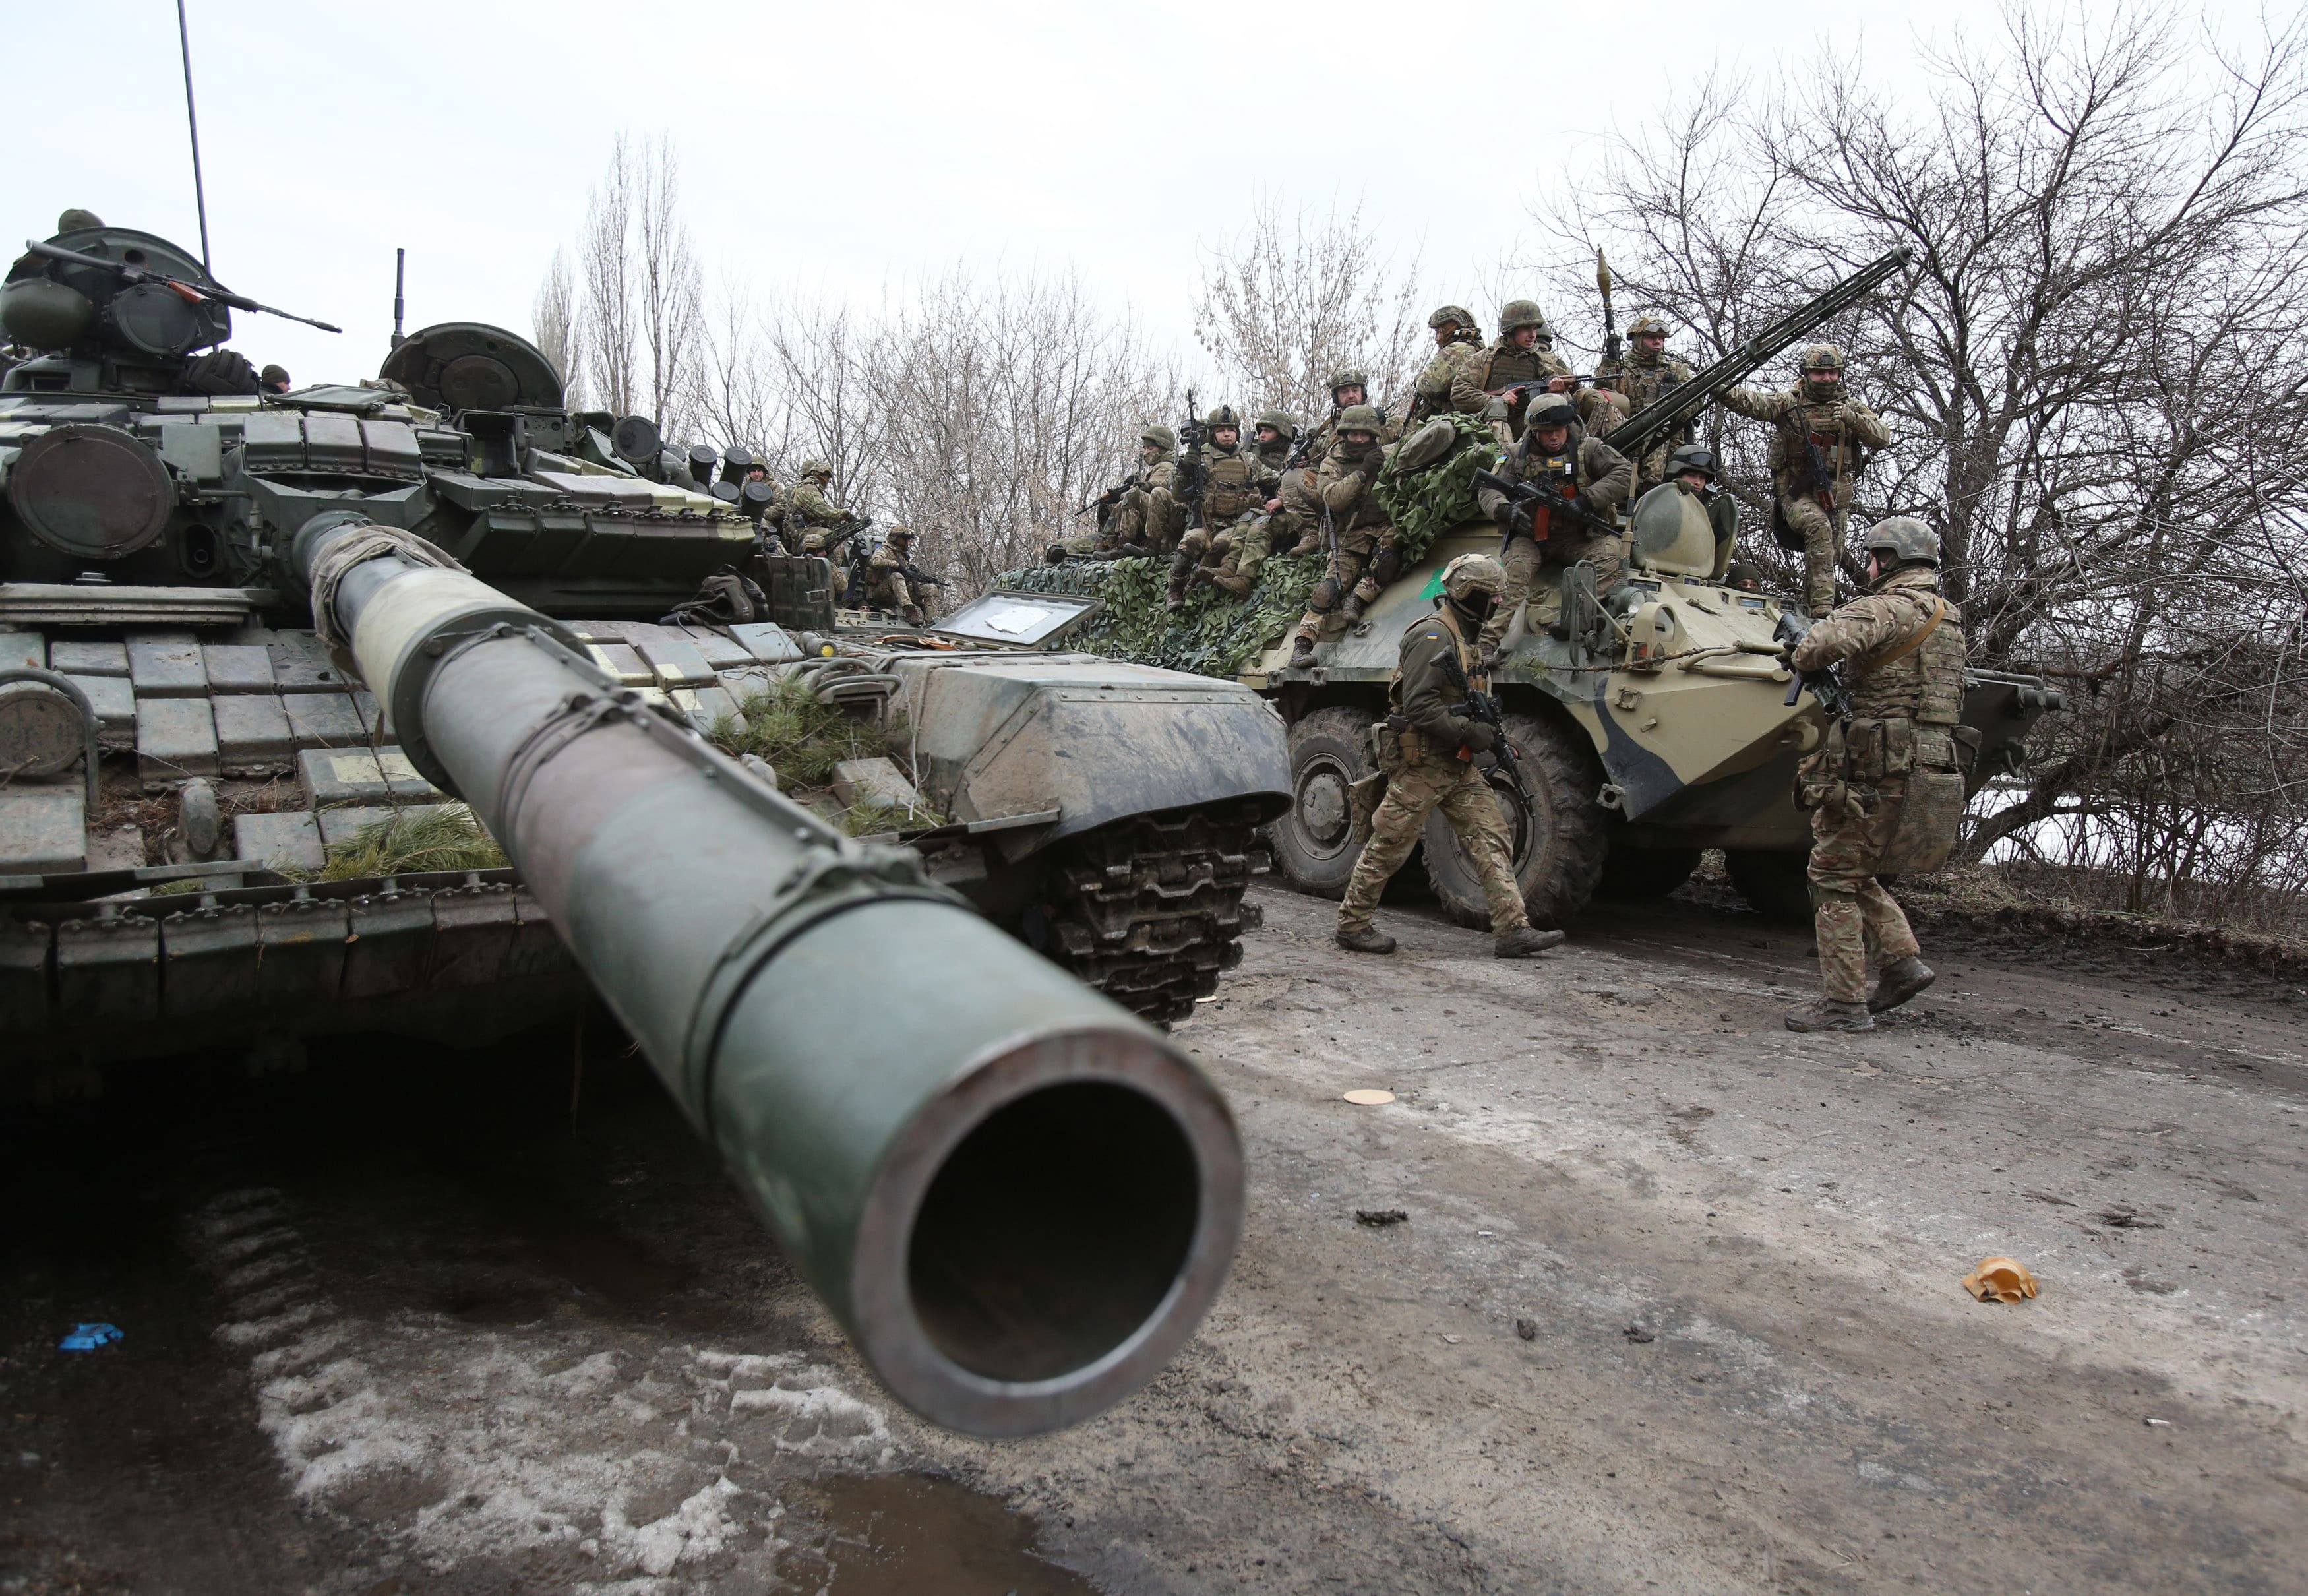 Des soldats ukrainiens se préparent à repousser une attaque dans la région de Louhansk (Ukraine), le 24 février 2022 (AFP)